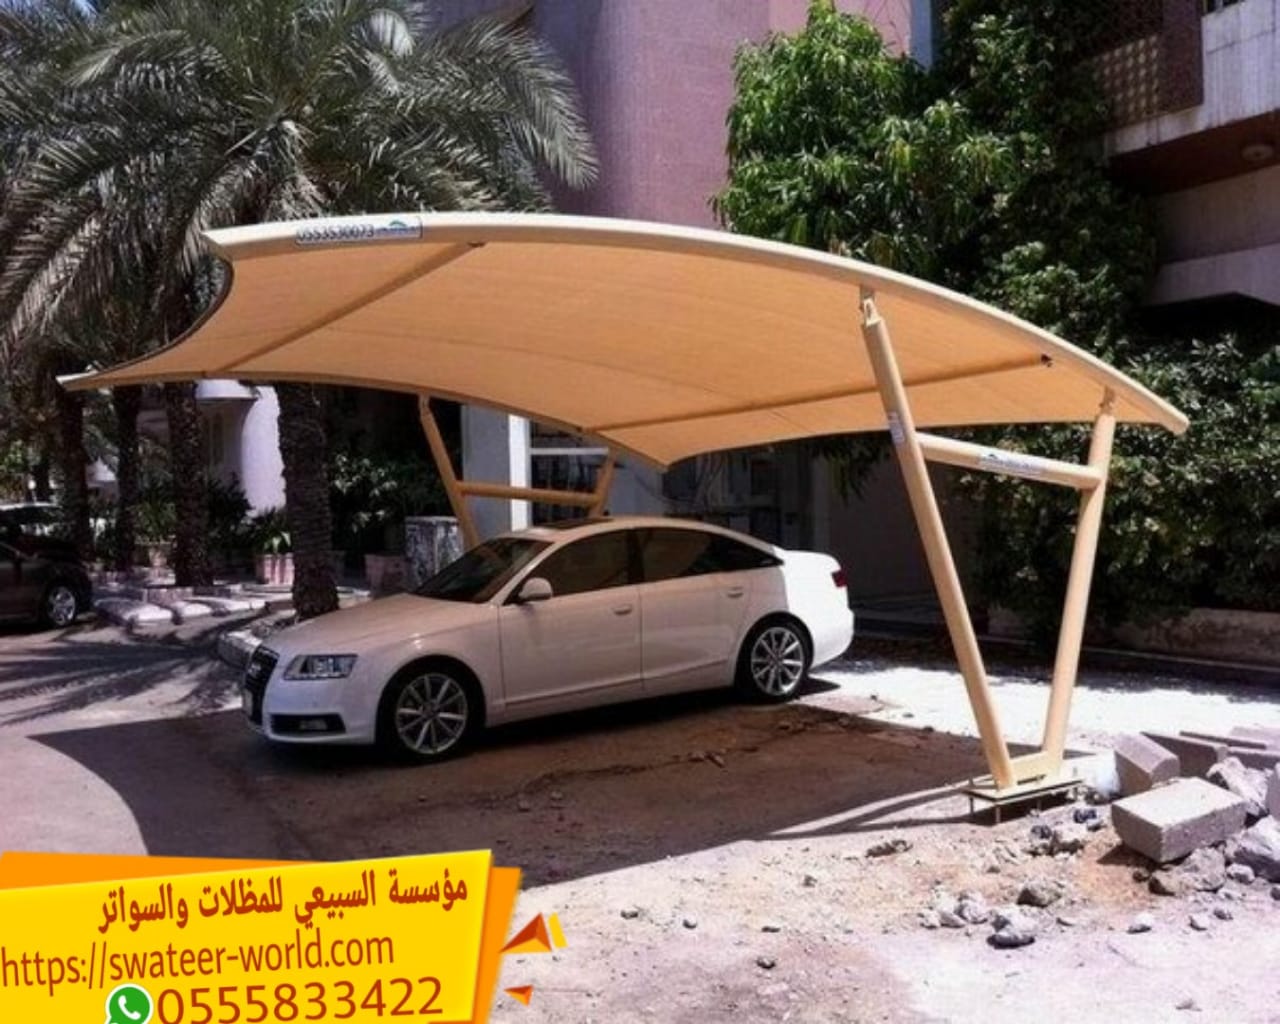 مظلات سيارات في الرياض , 0555833422 , شركة مظلات بالرياض , مظلات وسواتر الرياض بجودة عالية ,  P_16097cyjy3